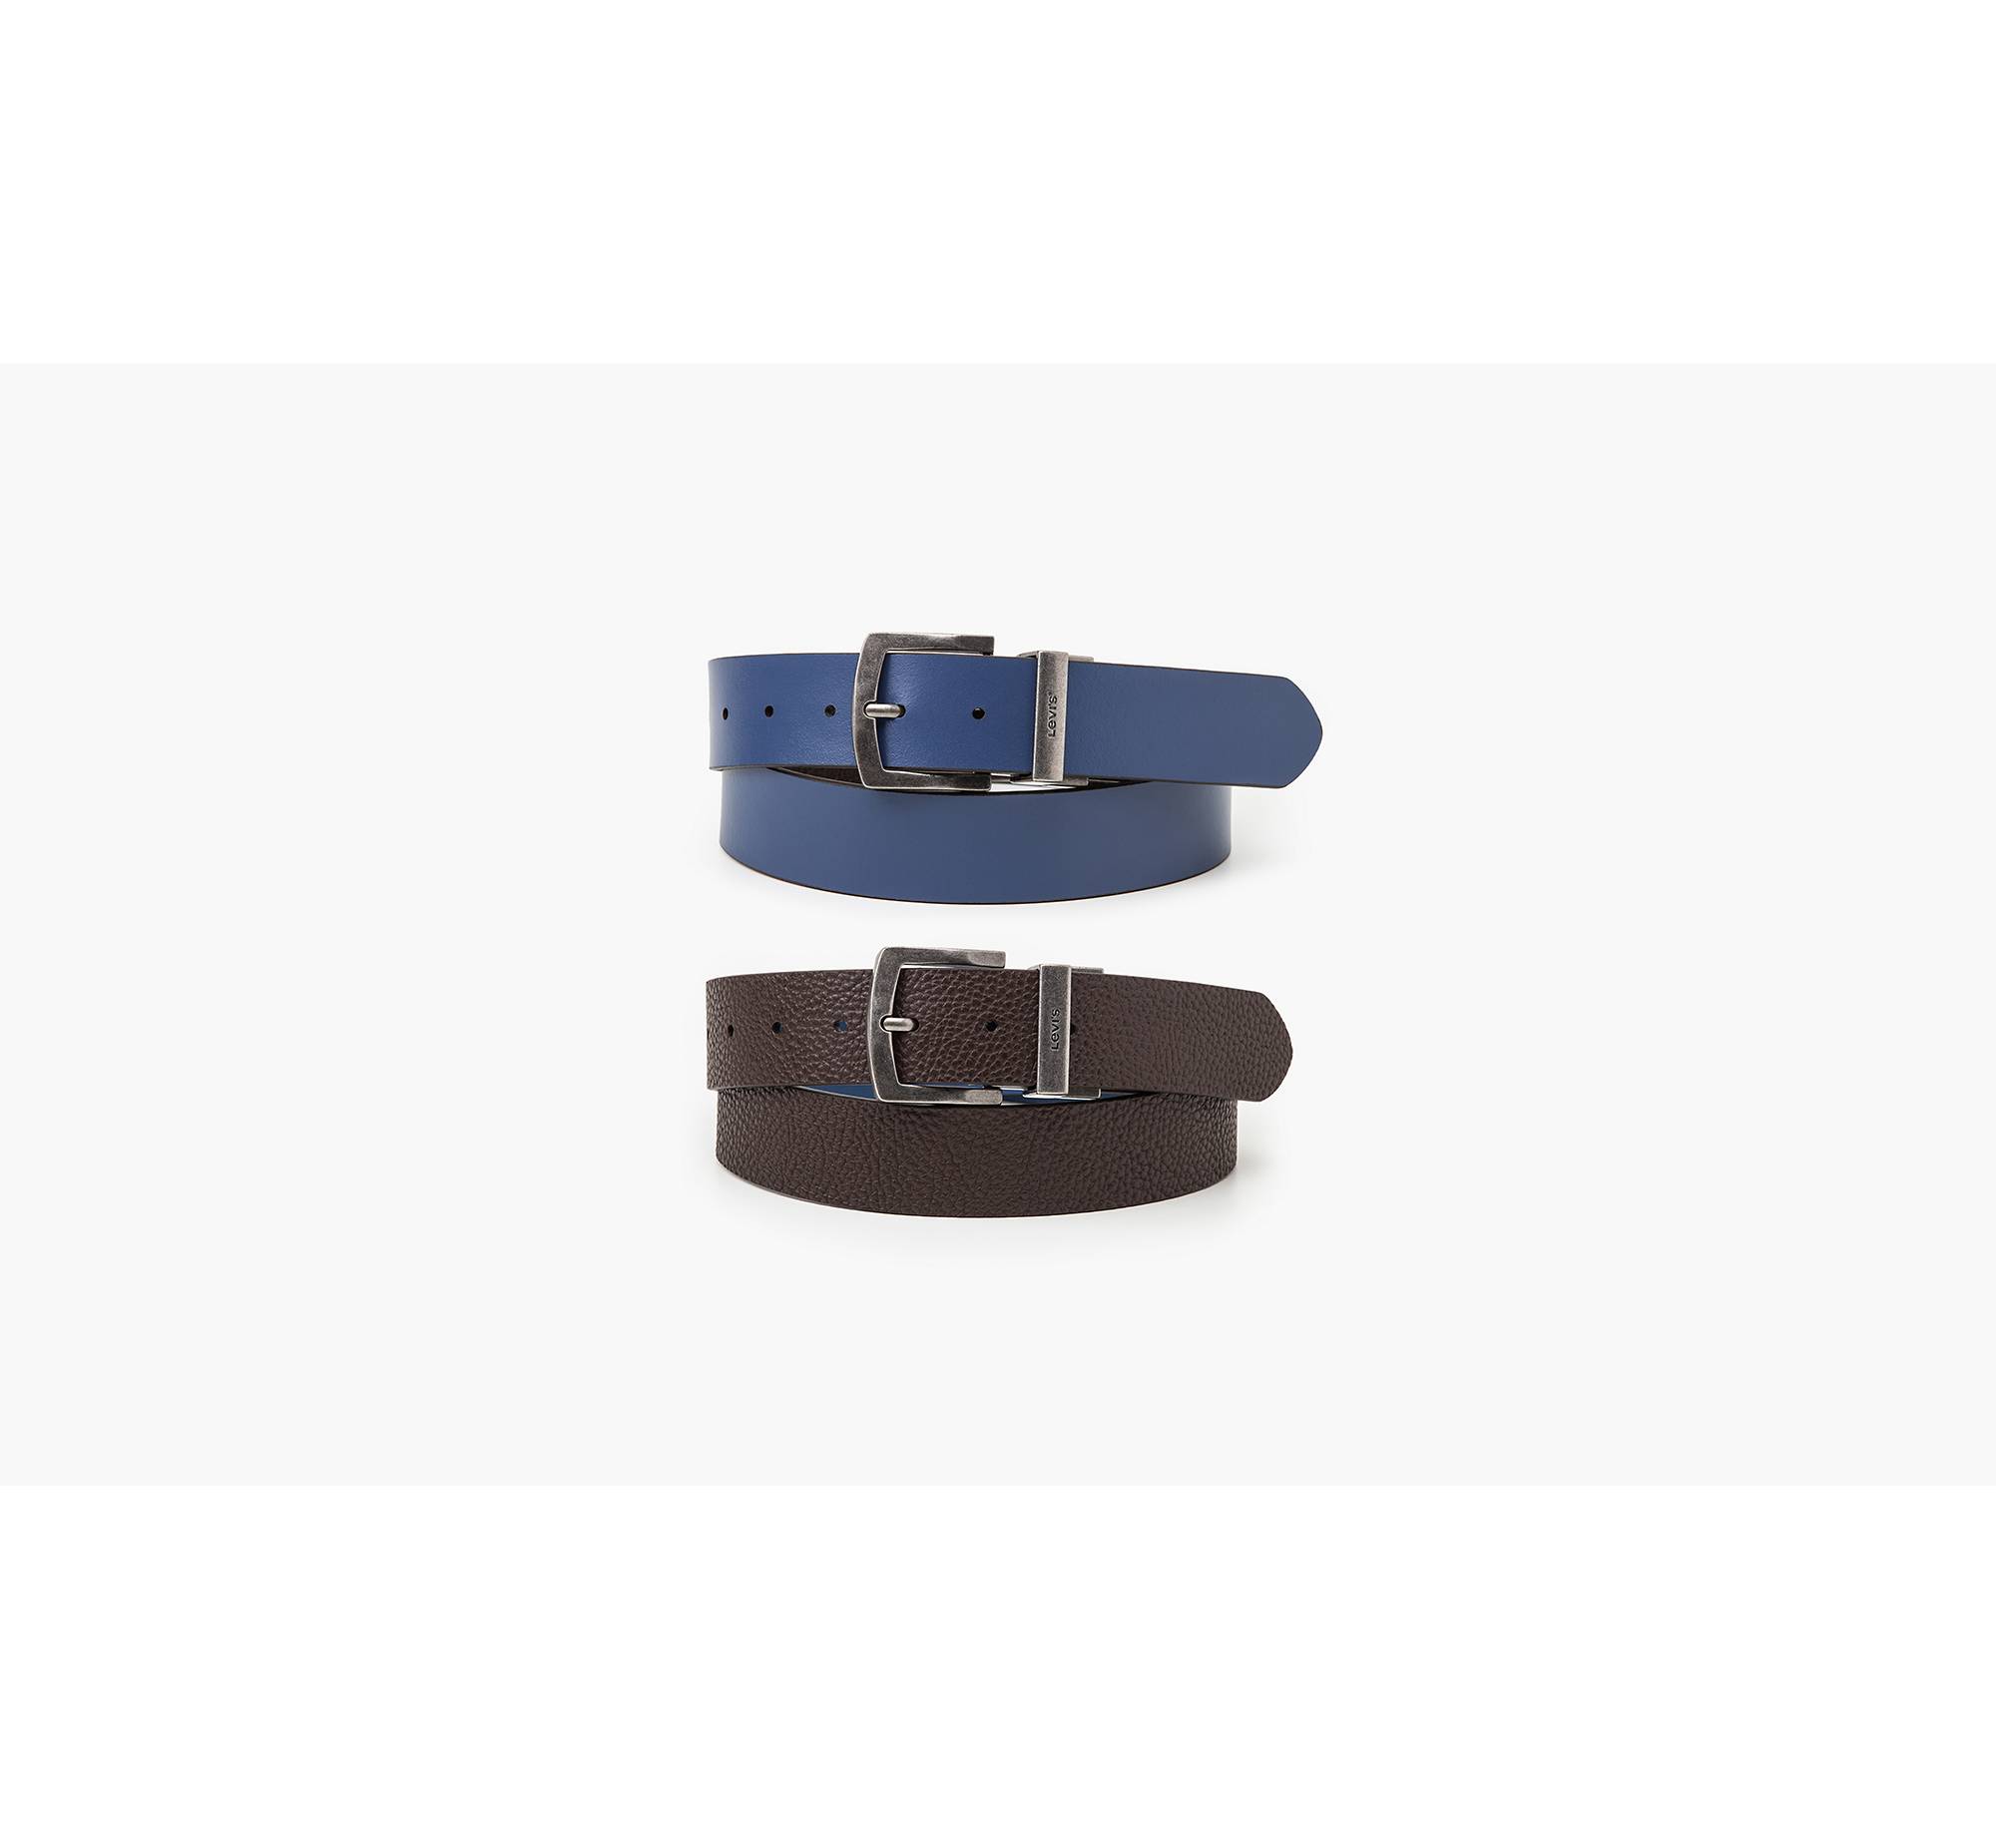 Bleu & brown LV belt